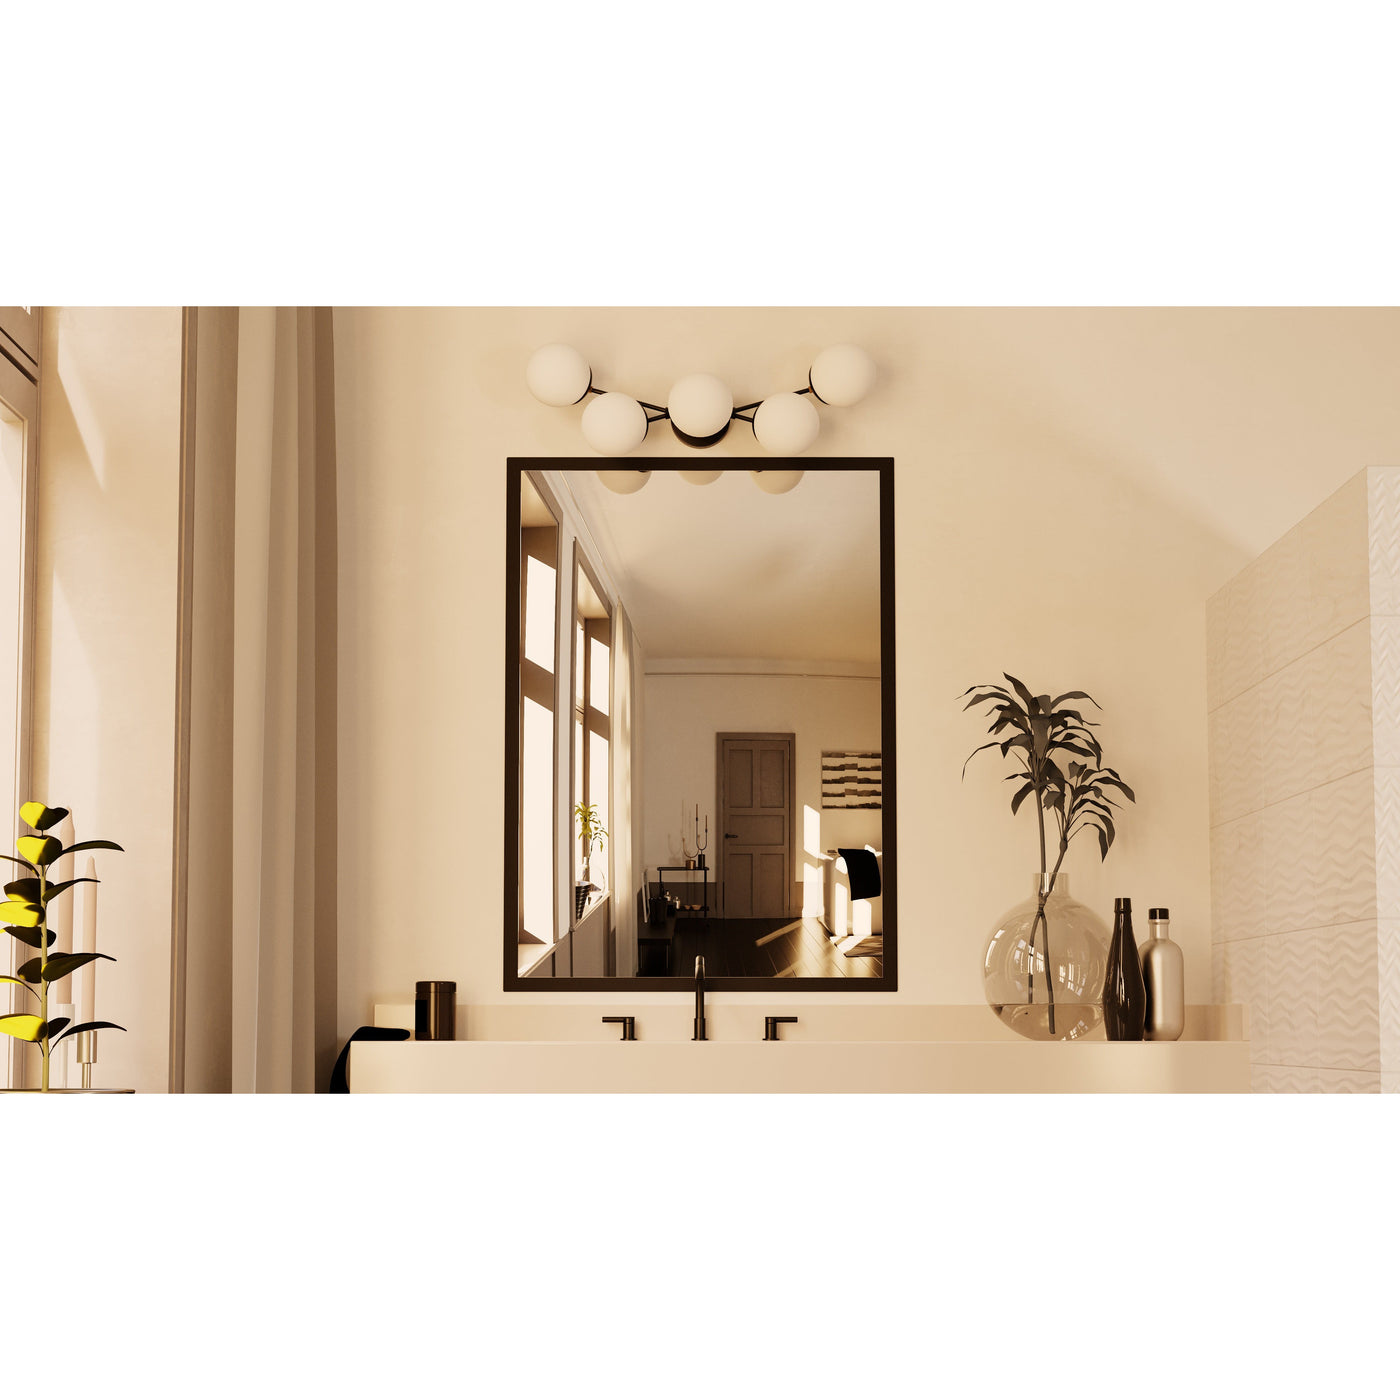 Owasso - Five Light Bathroom Vanity